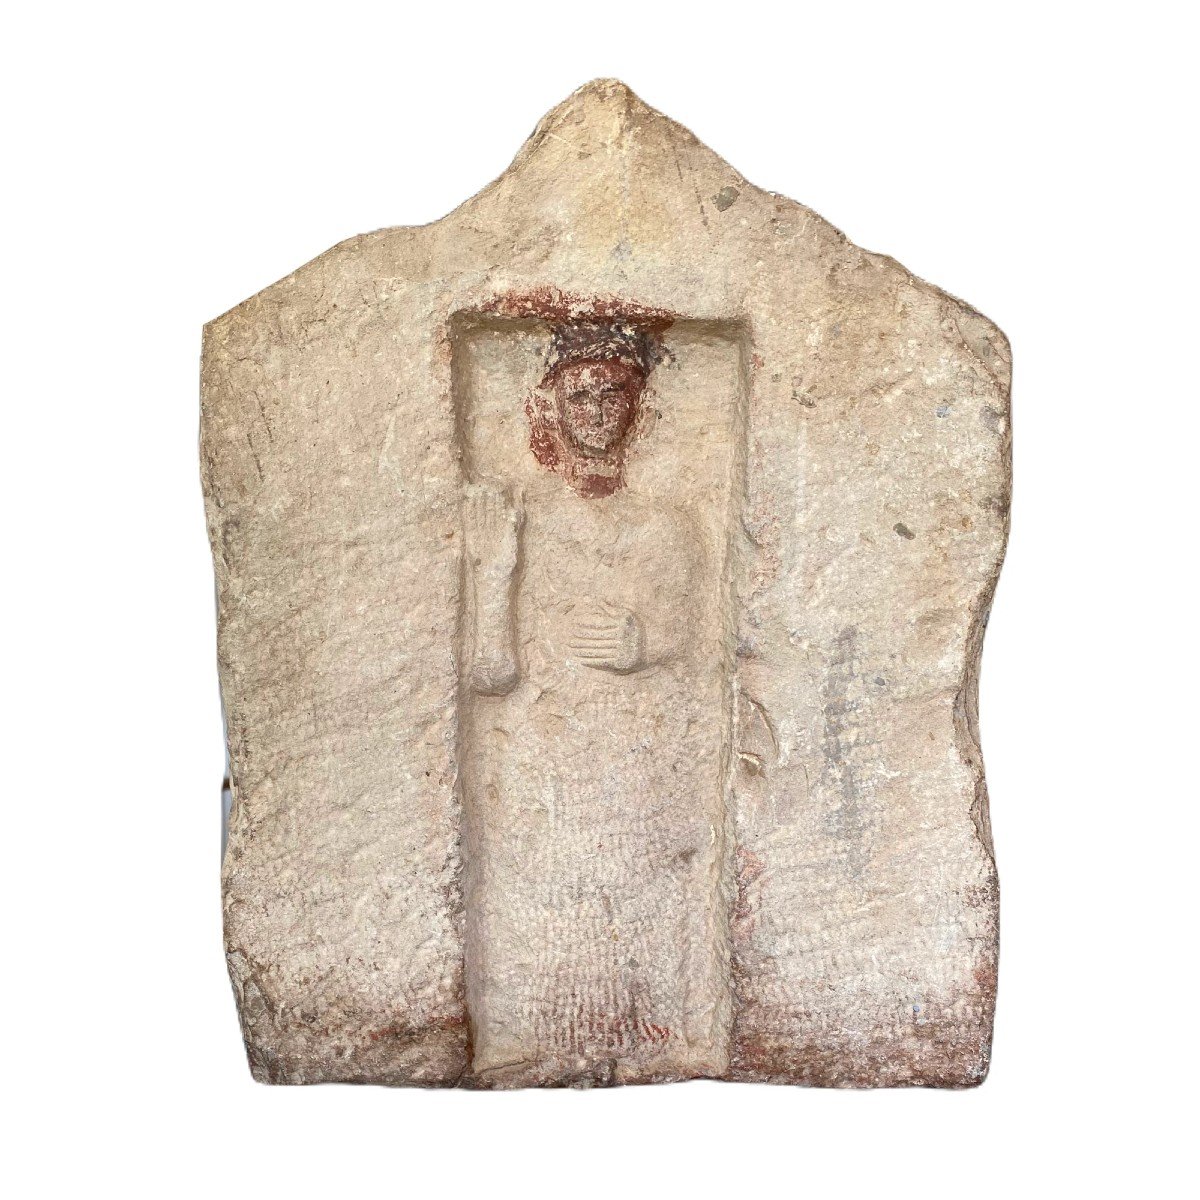 Punic Stele. Carthage 3rd Century Bc